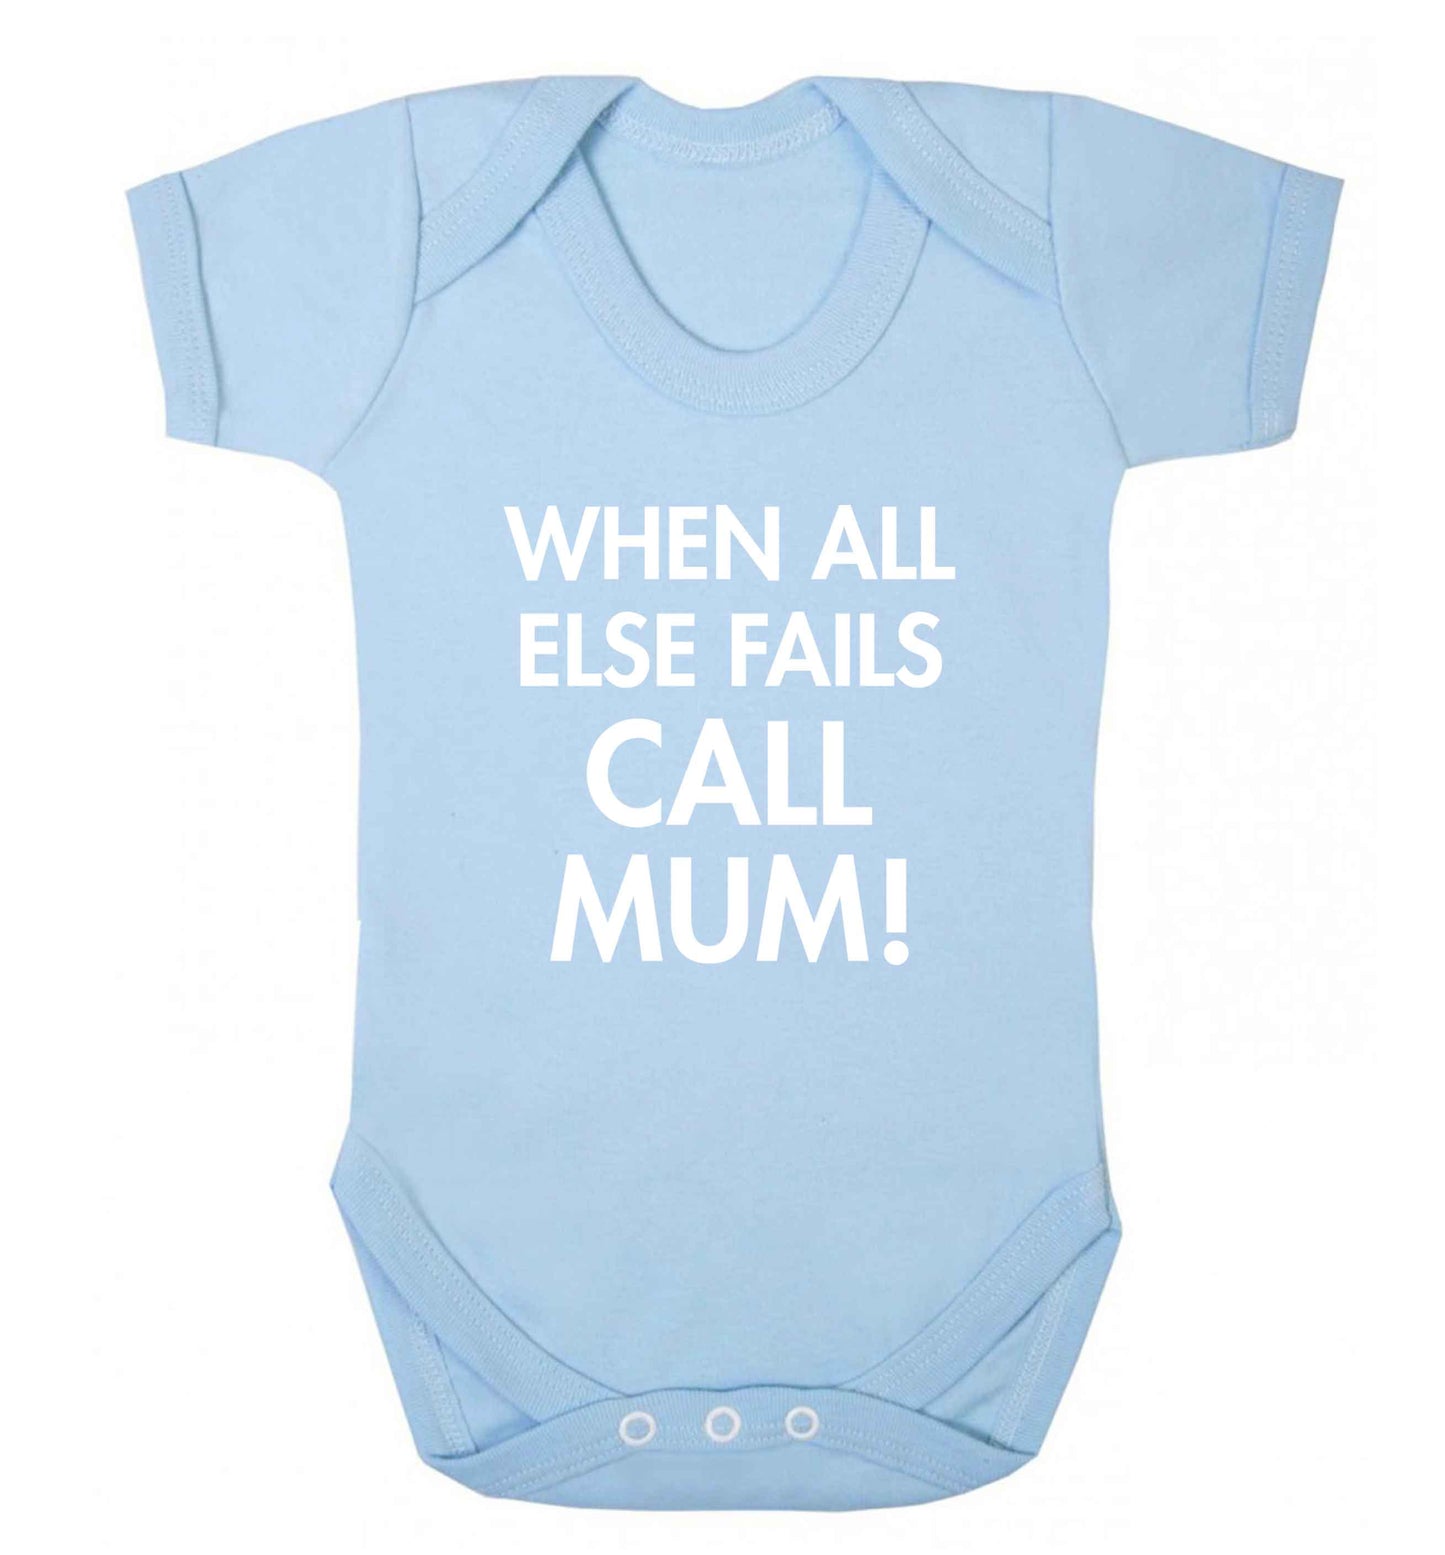 When all else fails call mum! baby vest pale blue 18-24 months